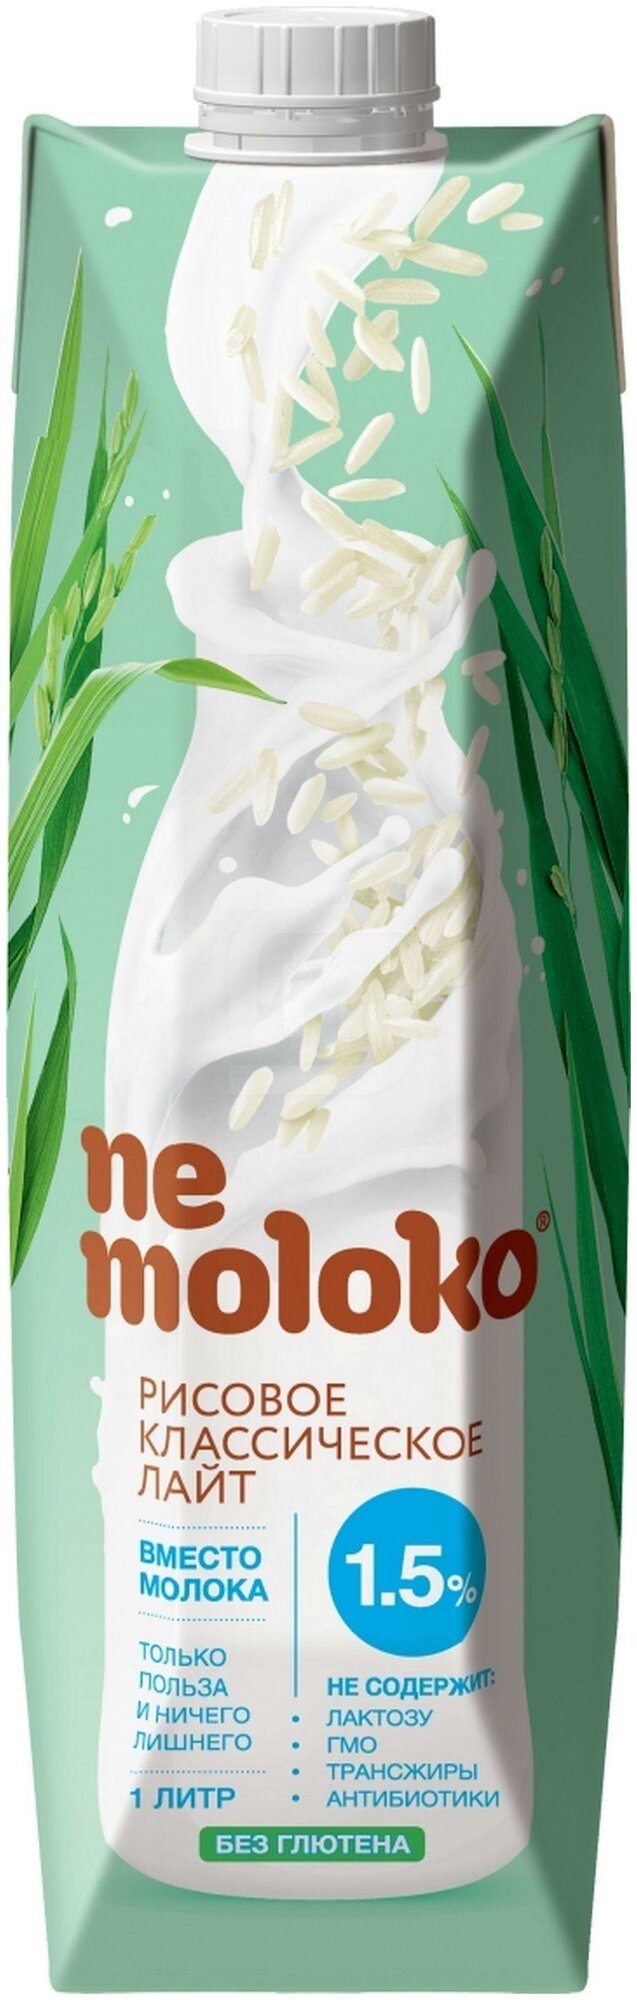 Напиток Nemoloko рисовый классический лайт